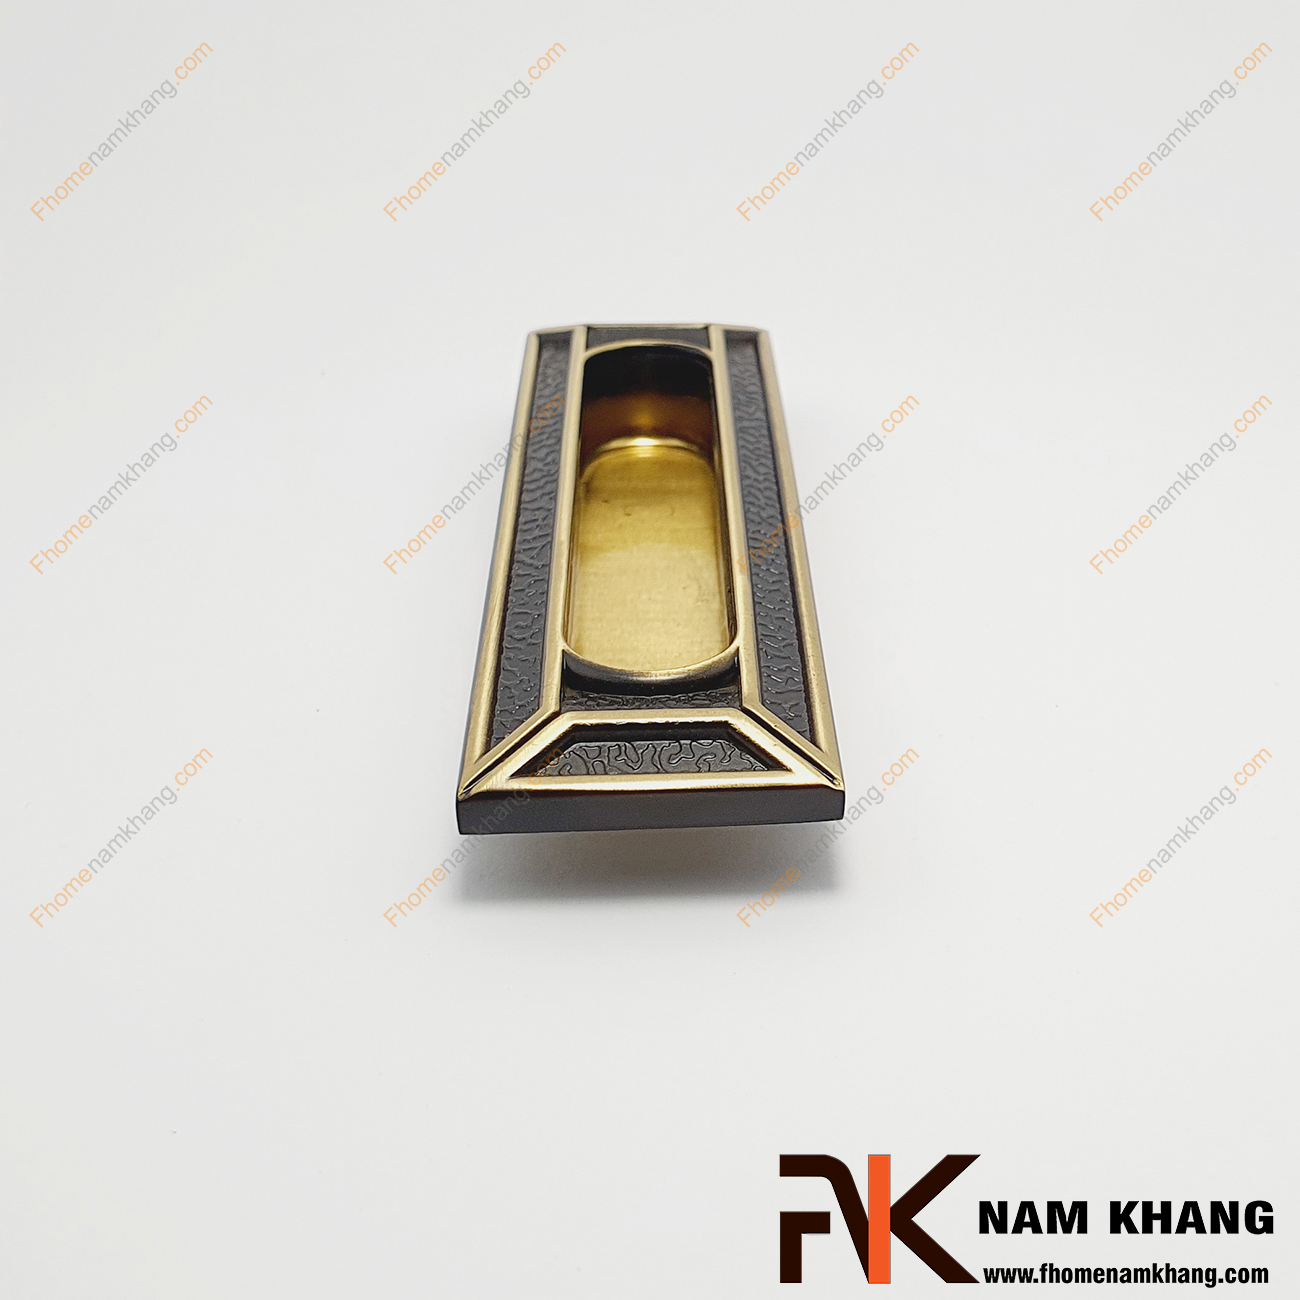 Tay nắm âm tủ cổ điển màu vàng NK107-128DV có một thiết kế đặc biệt theo phong cách hoàng gia với các đường nét họa tiết hết sức sang trọng, độc đáo.